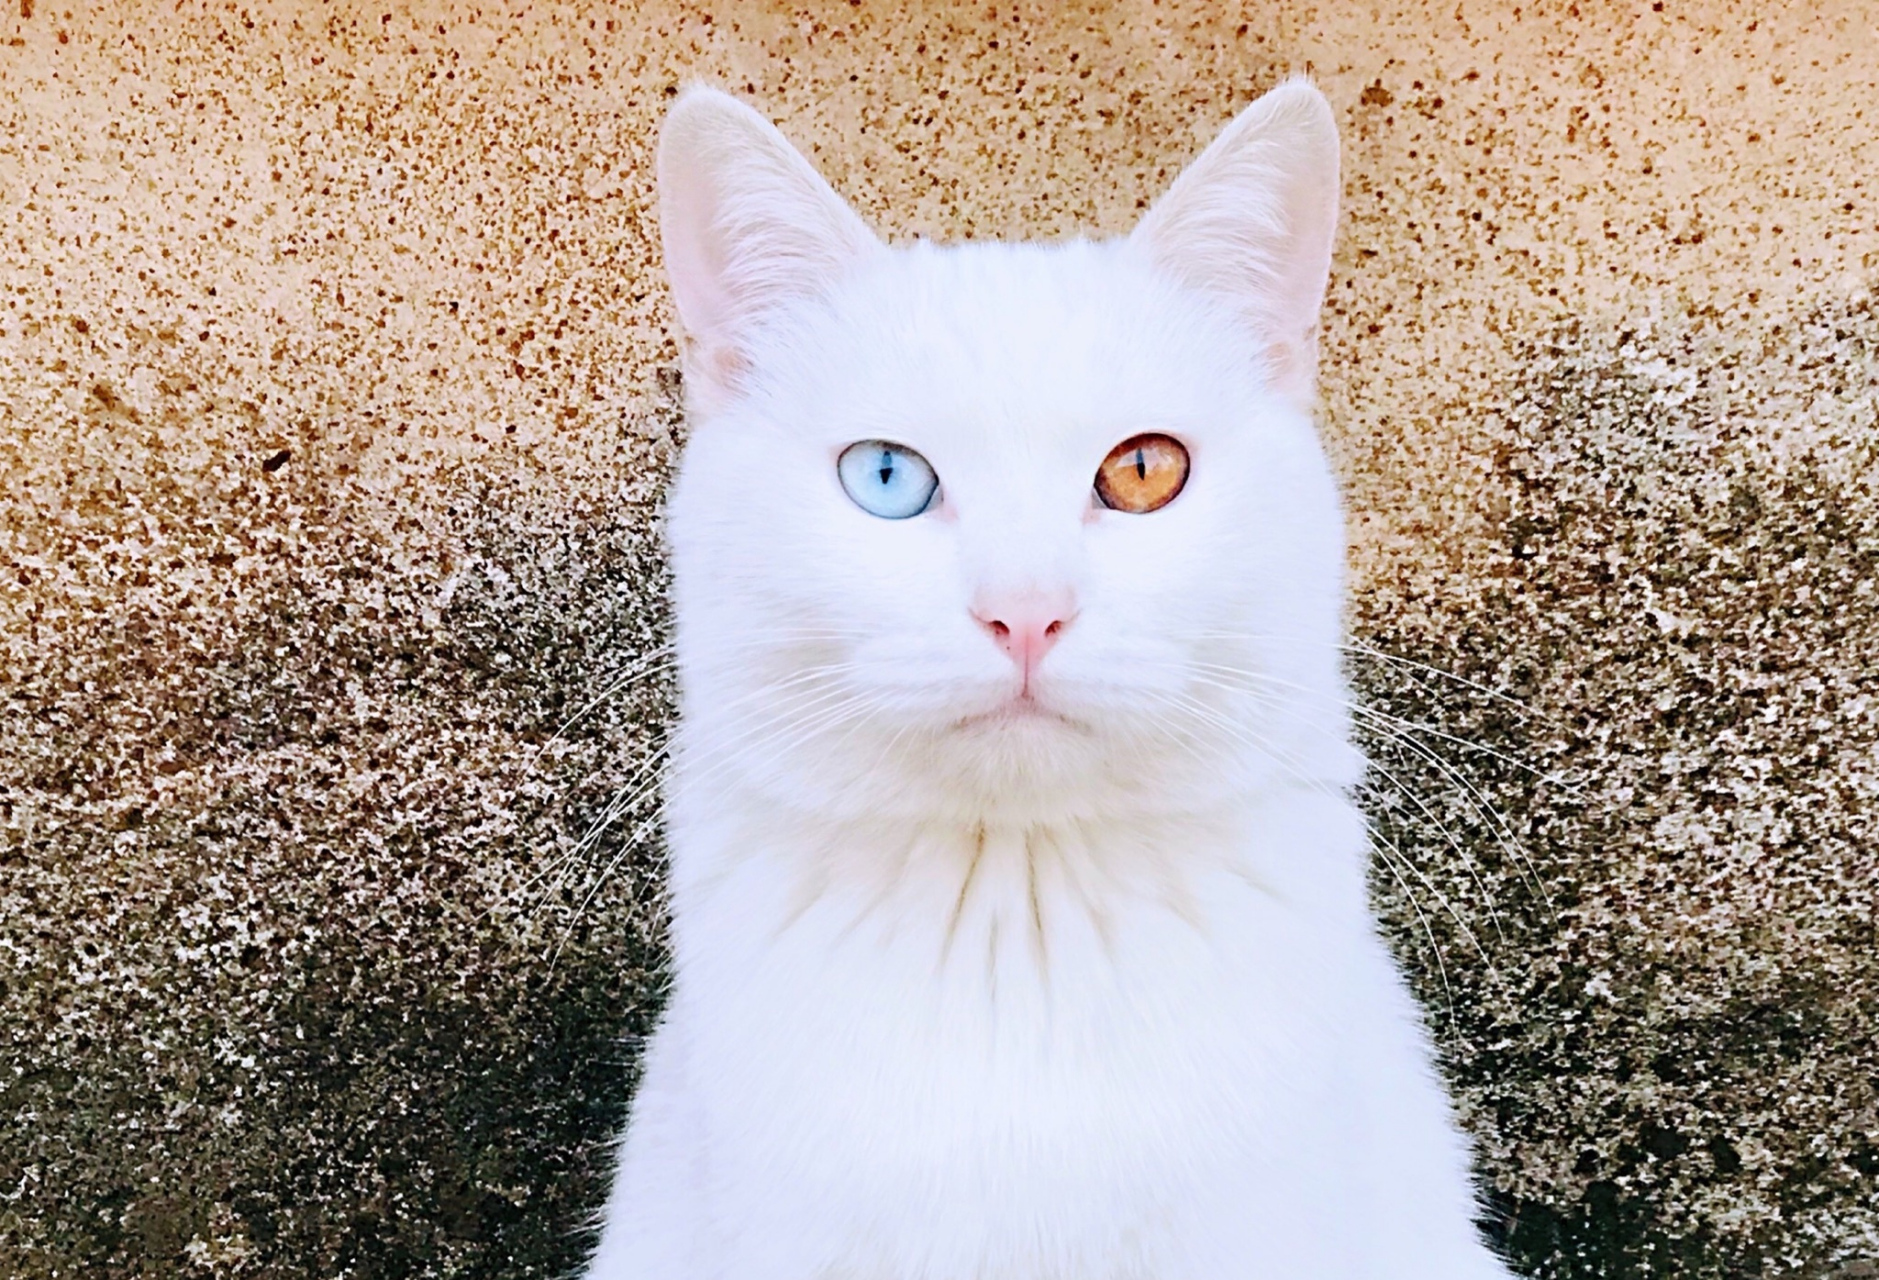 异瞳猫咪,或许是动物世界中的精灵 